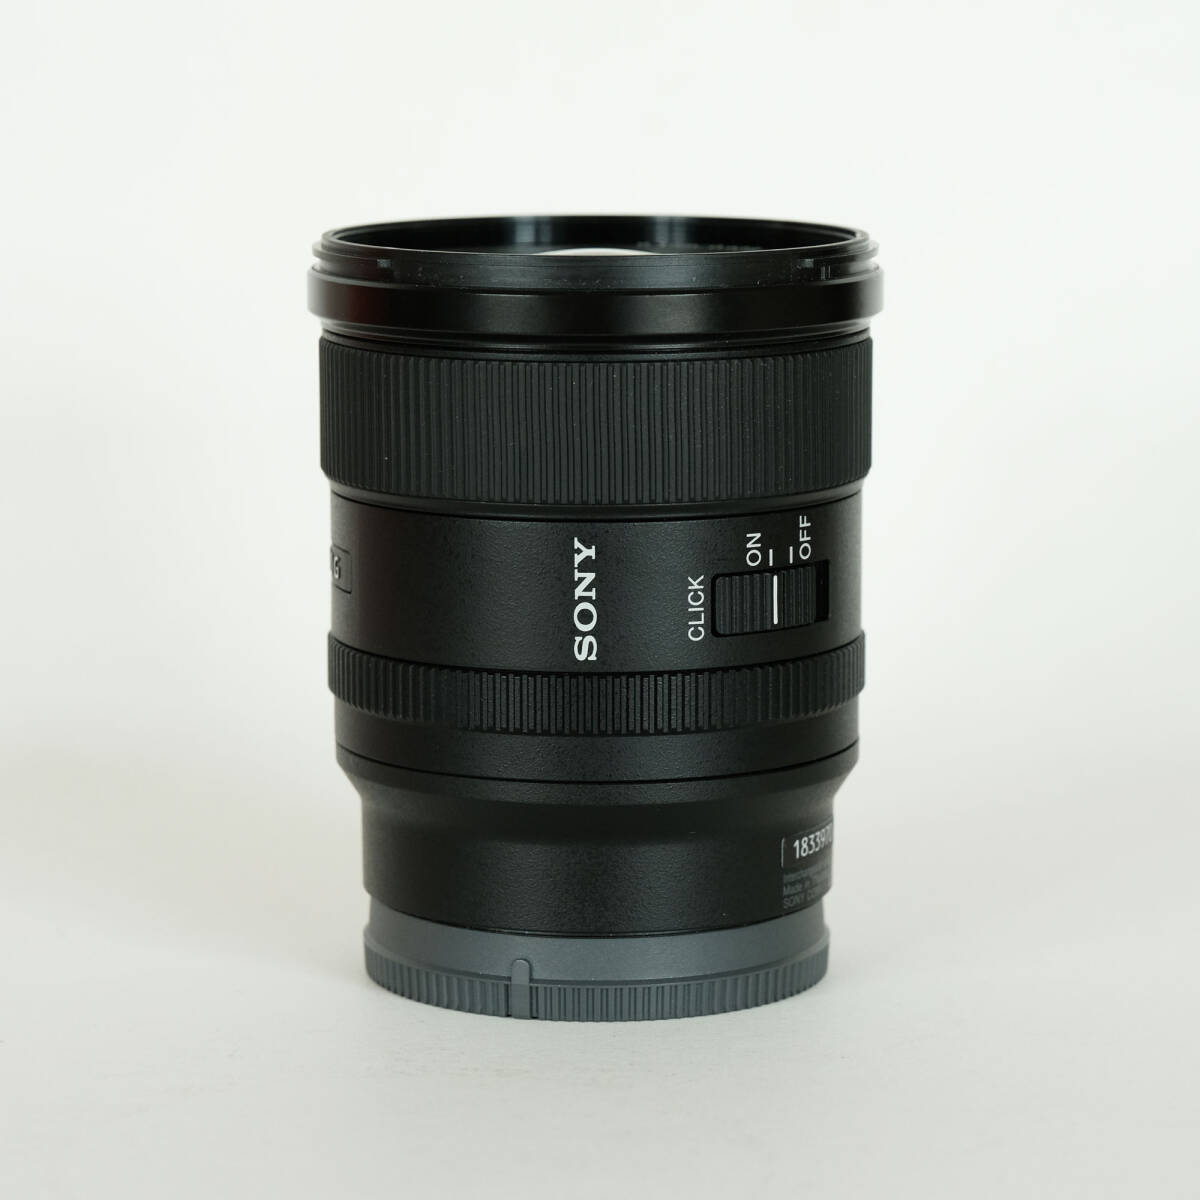 [極美品] SONY FE 20mm F1.8 G SEL20F18G / 単焦点レンズ / ソニーEマウント / フルサイズ対応